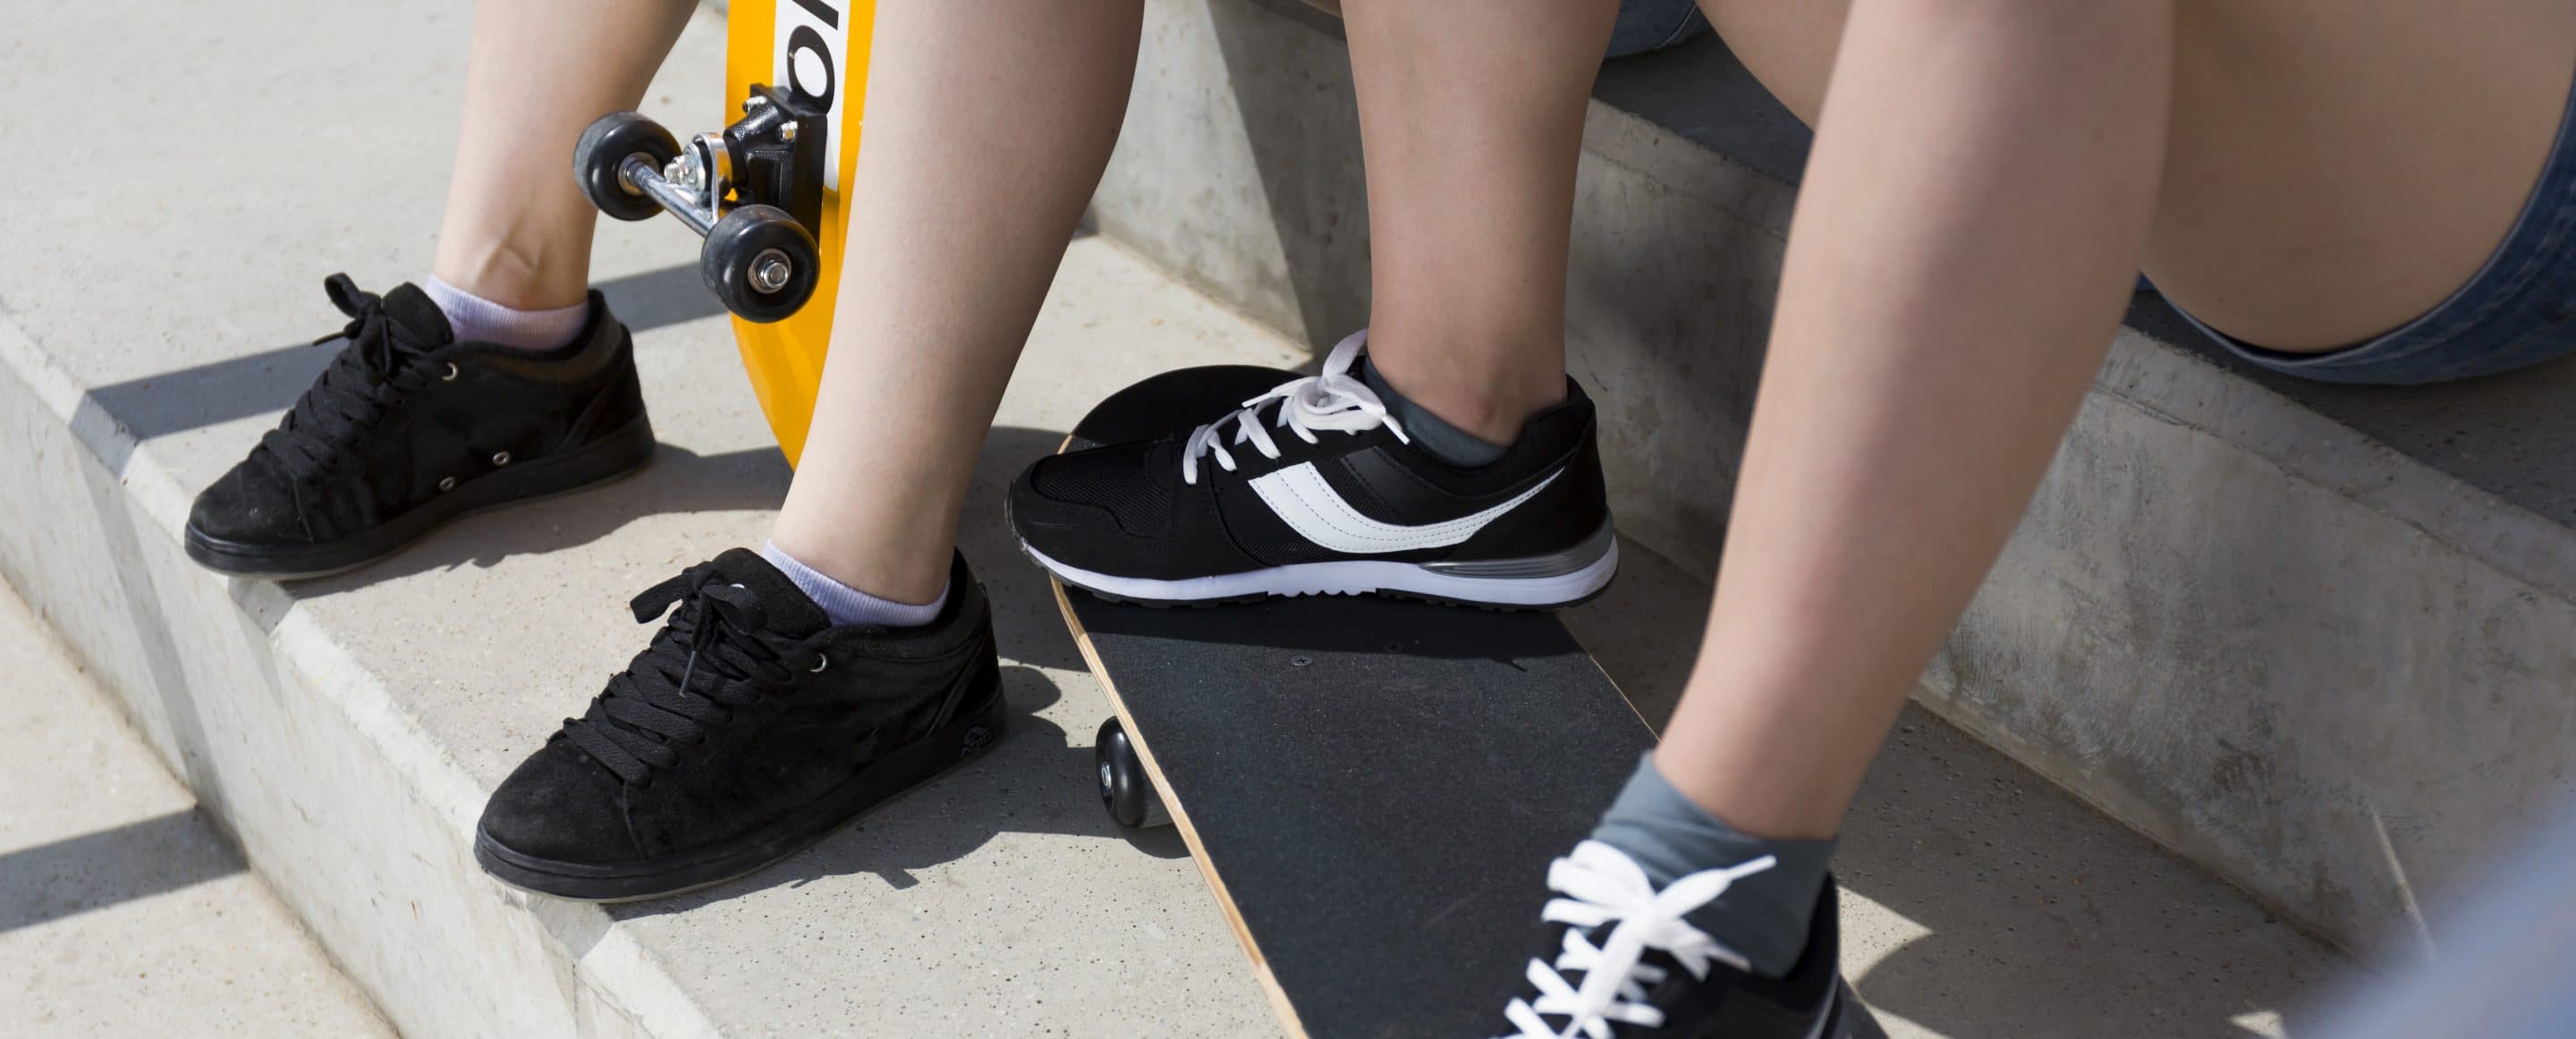 Teebeutel gegen Stinkstiefel 23 teenagers legs in sport shoes PU2XHZR scaled